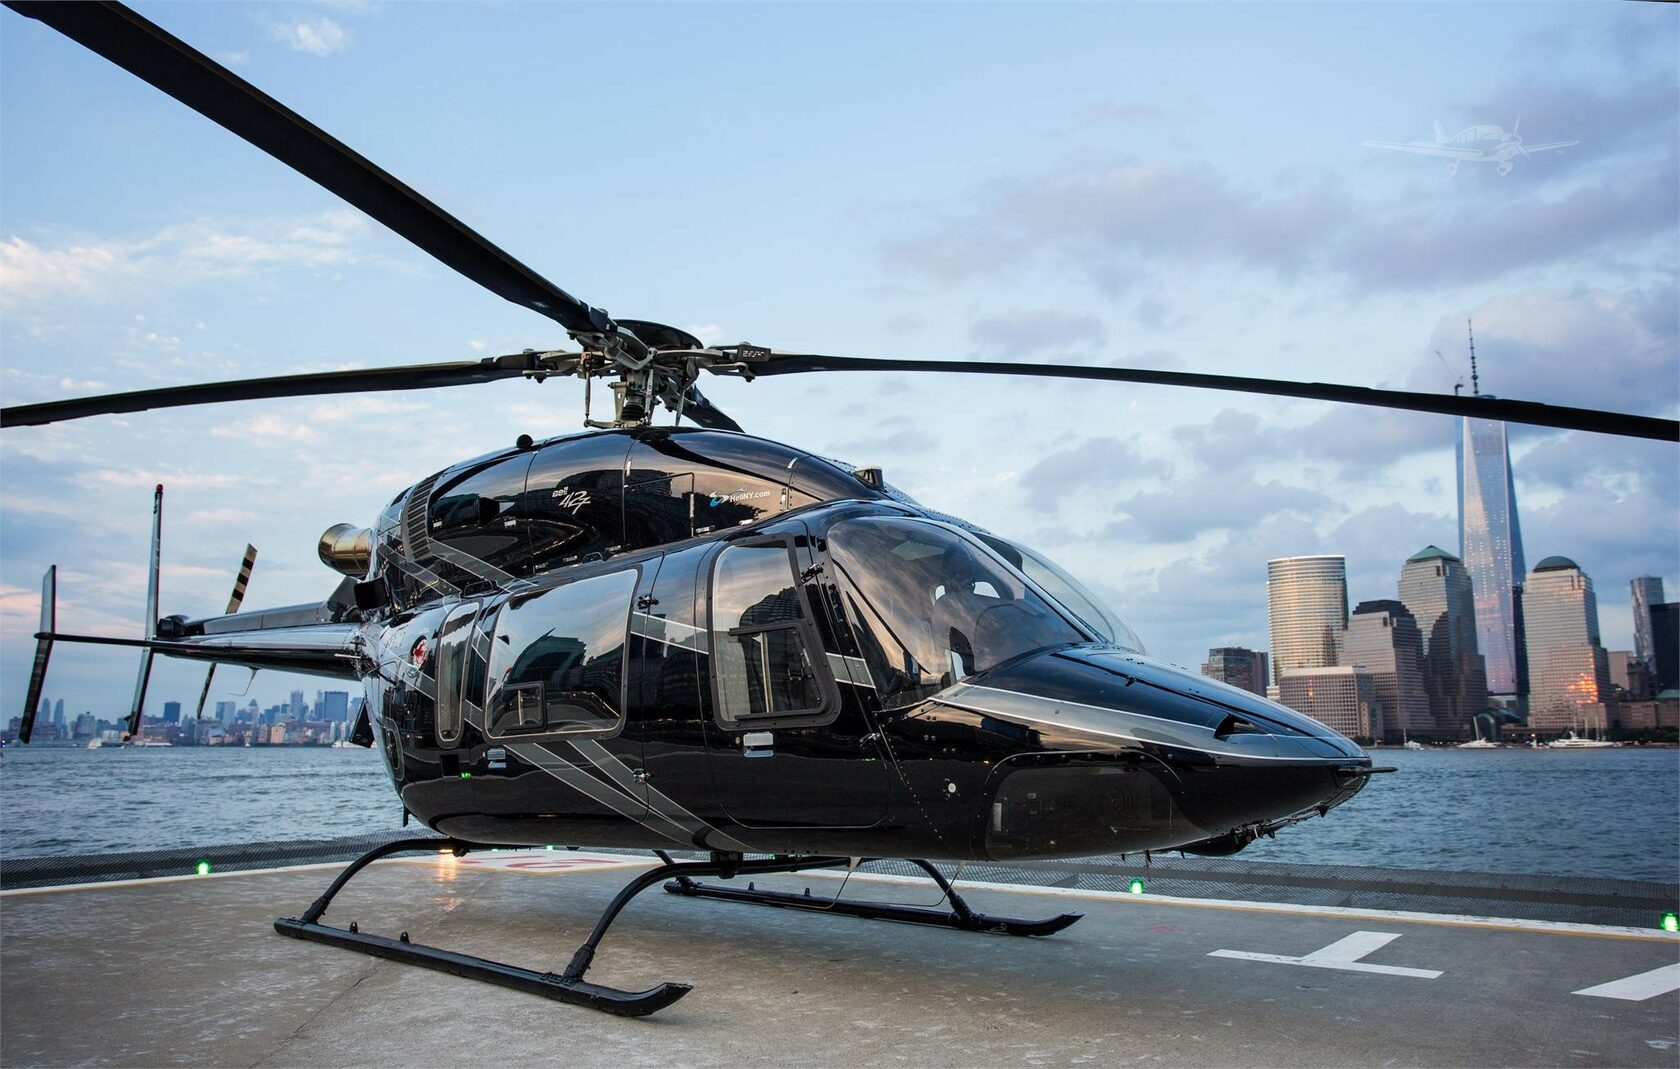 Вертолеты вчера. Bell 427 вертолет. Bell Helicopter вертолеты. A119 вертолет. Вертолет Eurocopter 120b.